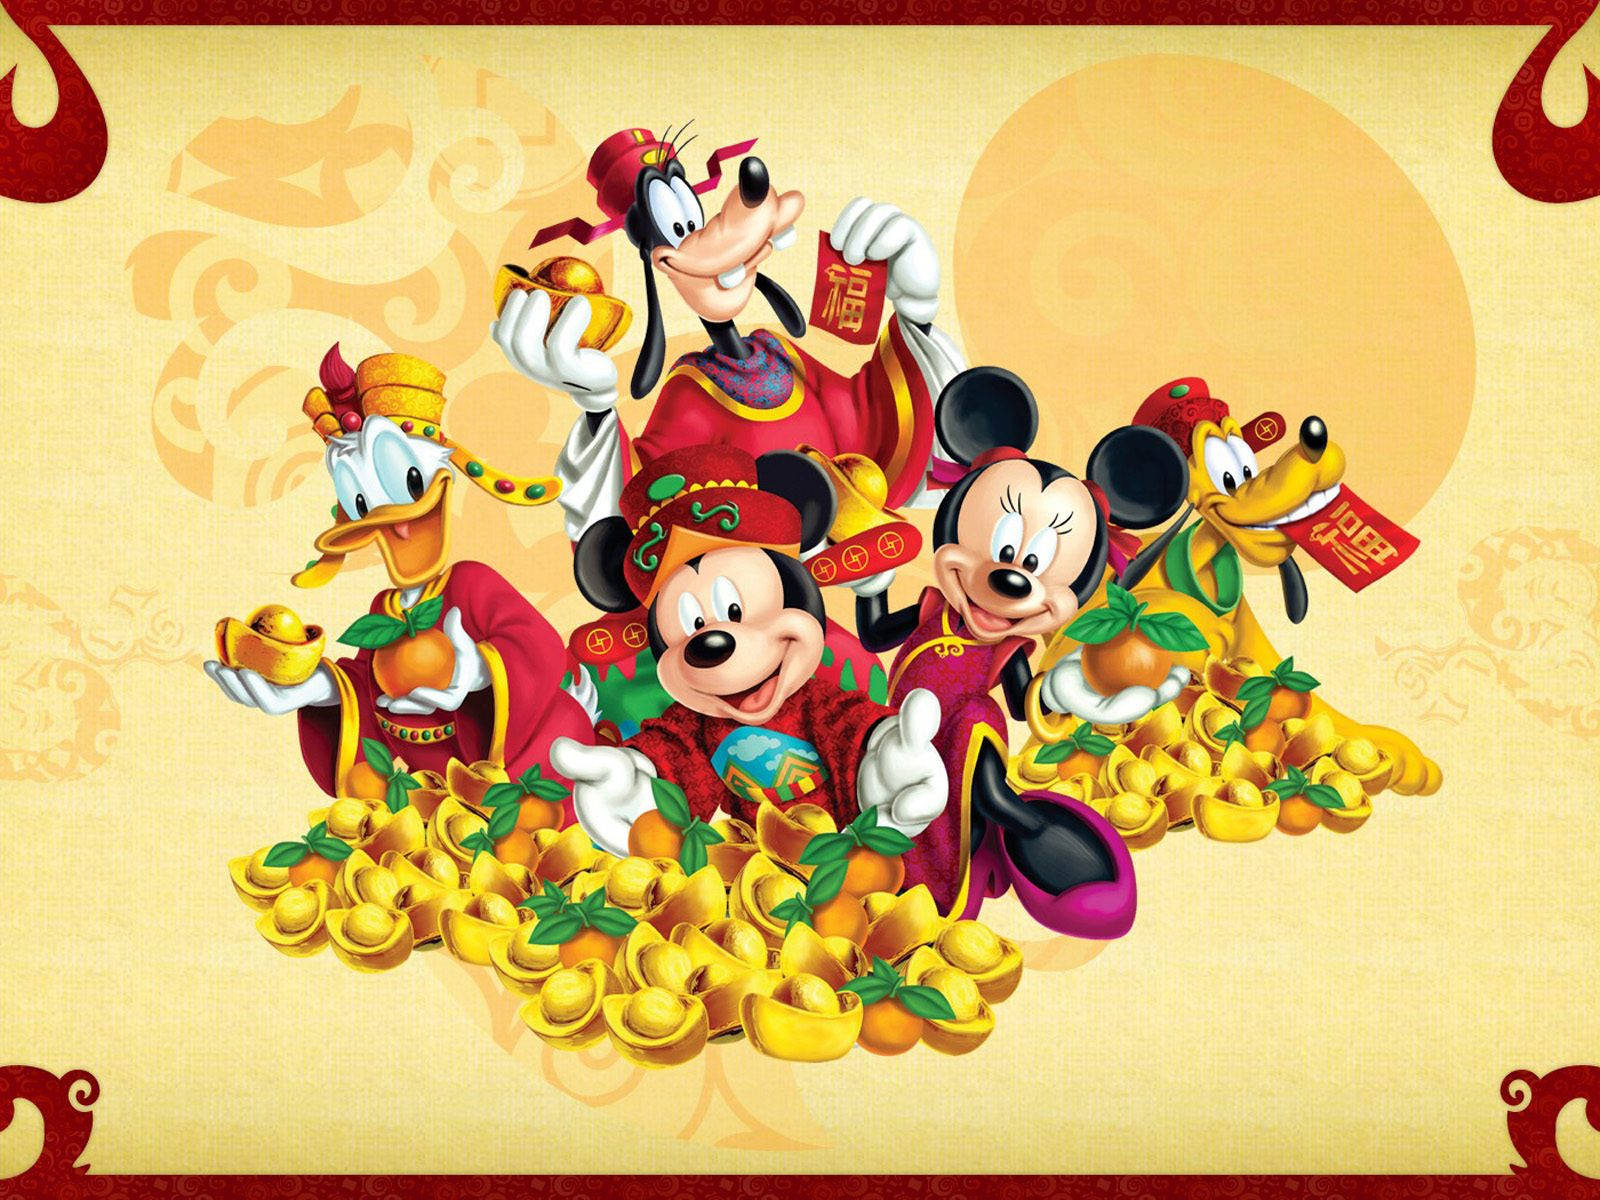 Skab som en indfødt dansk taler. Fejr Kinesisk Nytår med Disney Pluto. Wallpaper